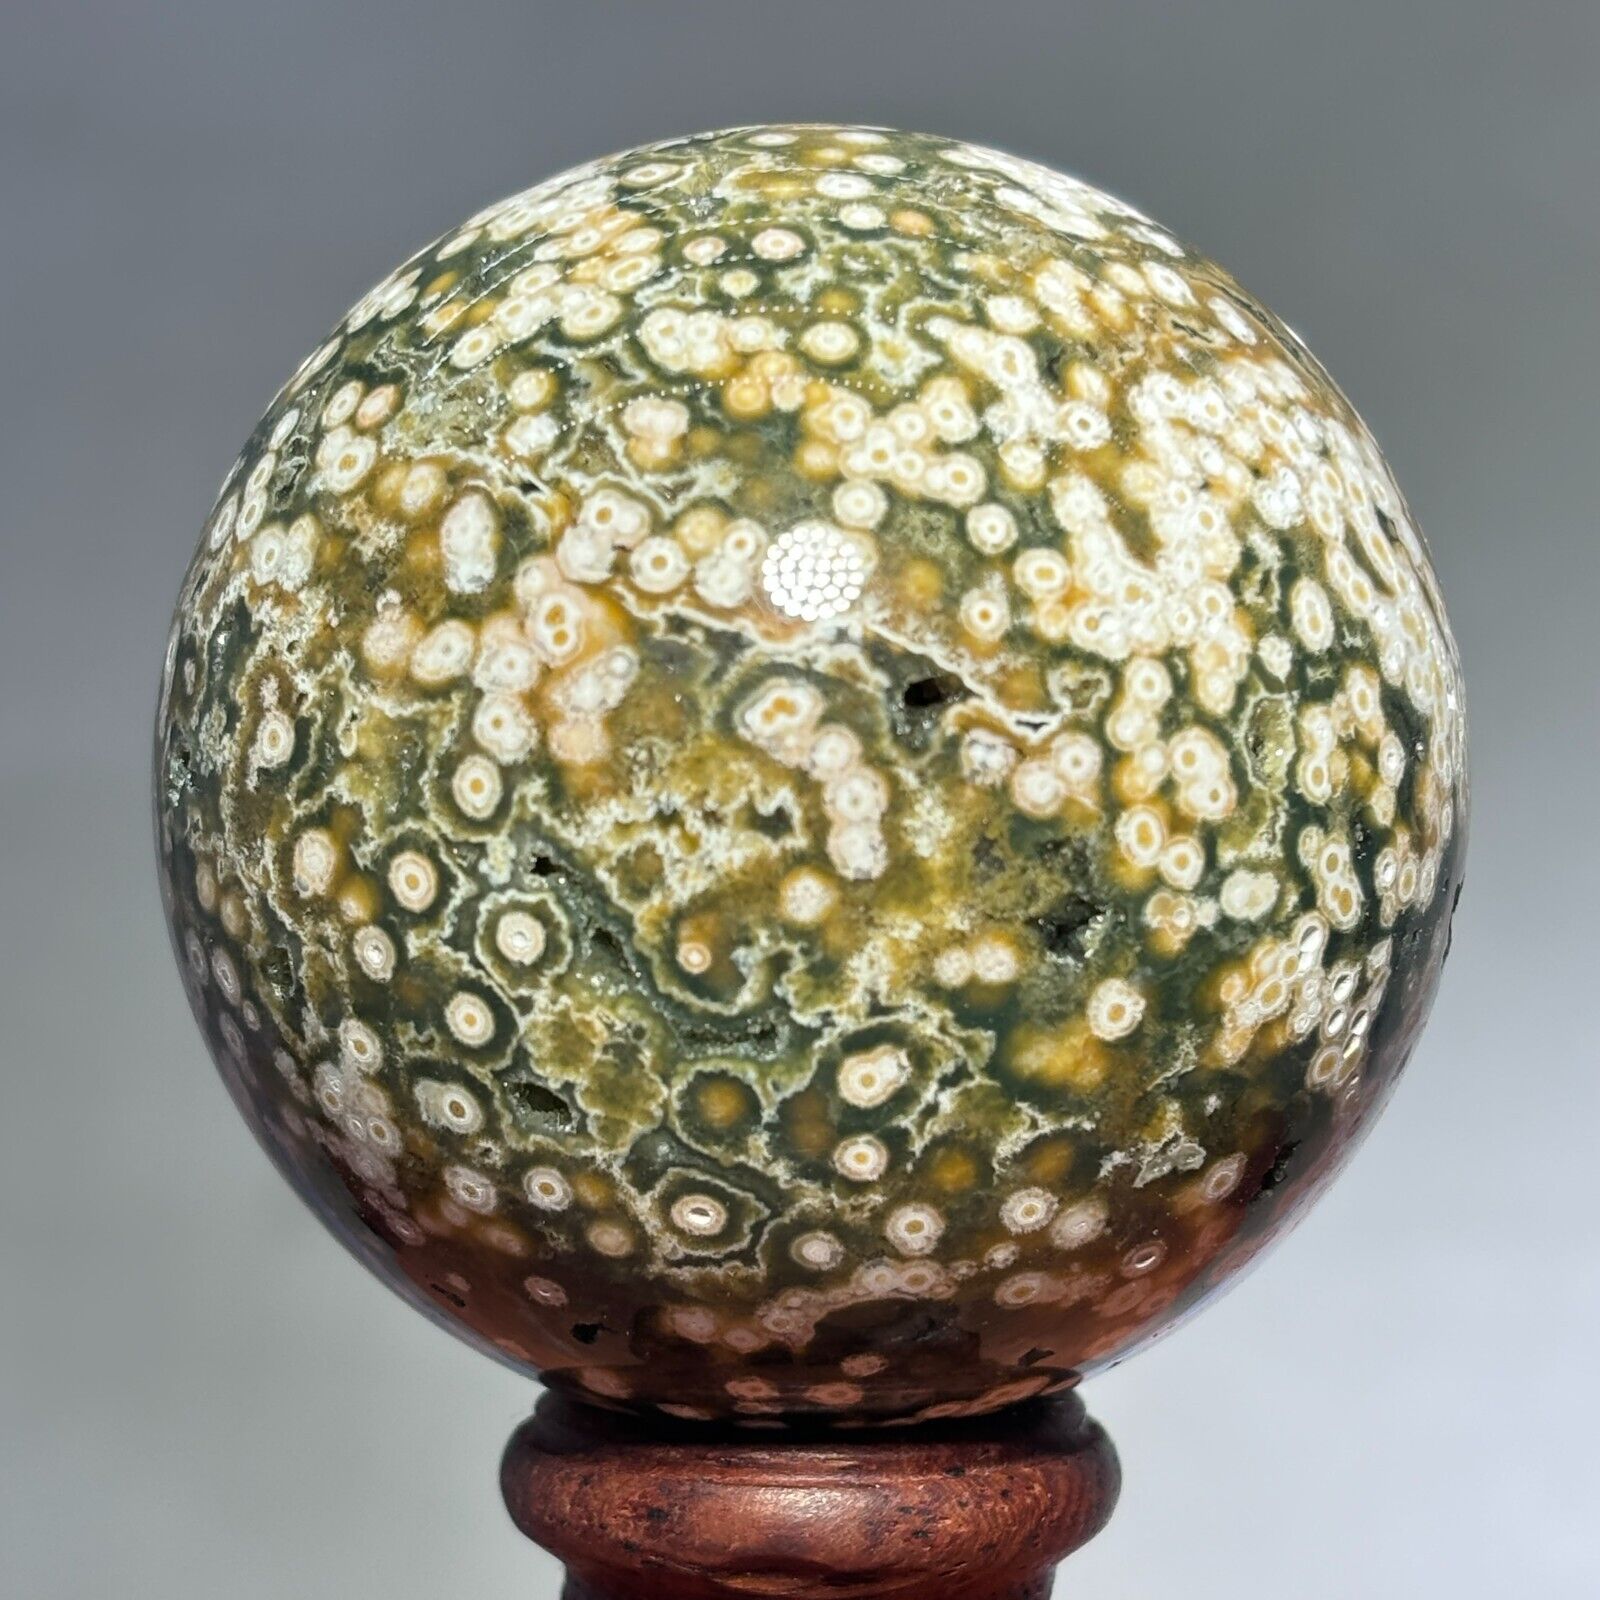 258g Rare Natural Ocean Jasper Sphere Quartz Crystal Ball Reiki Stone